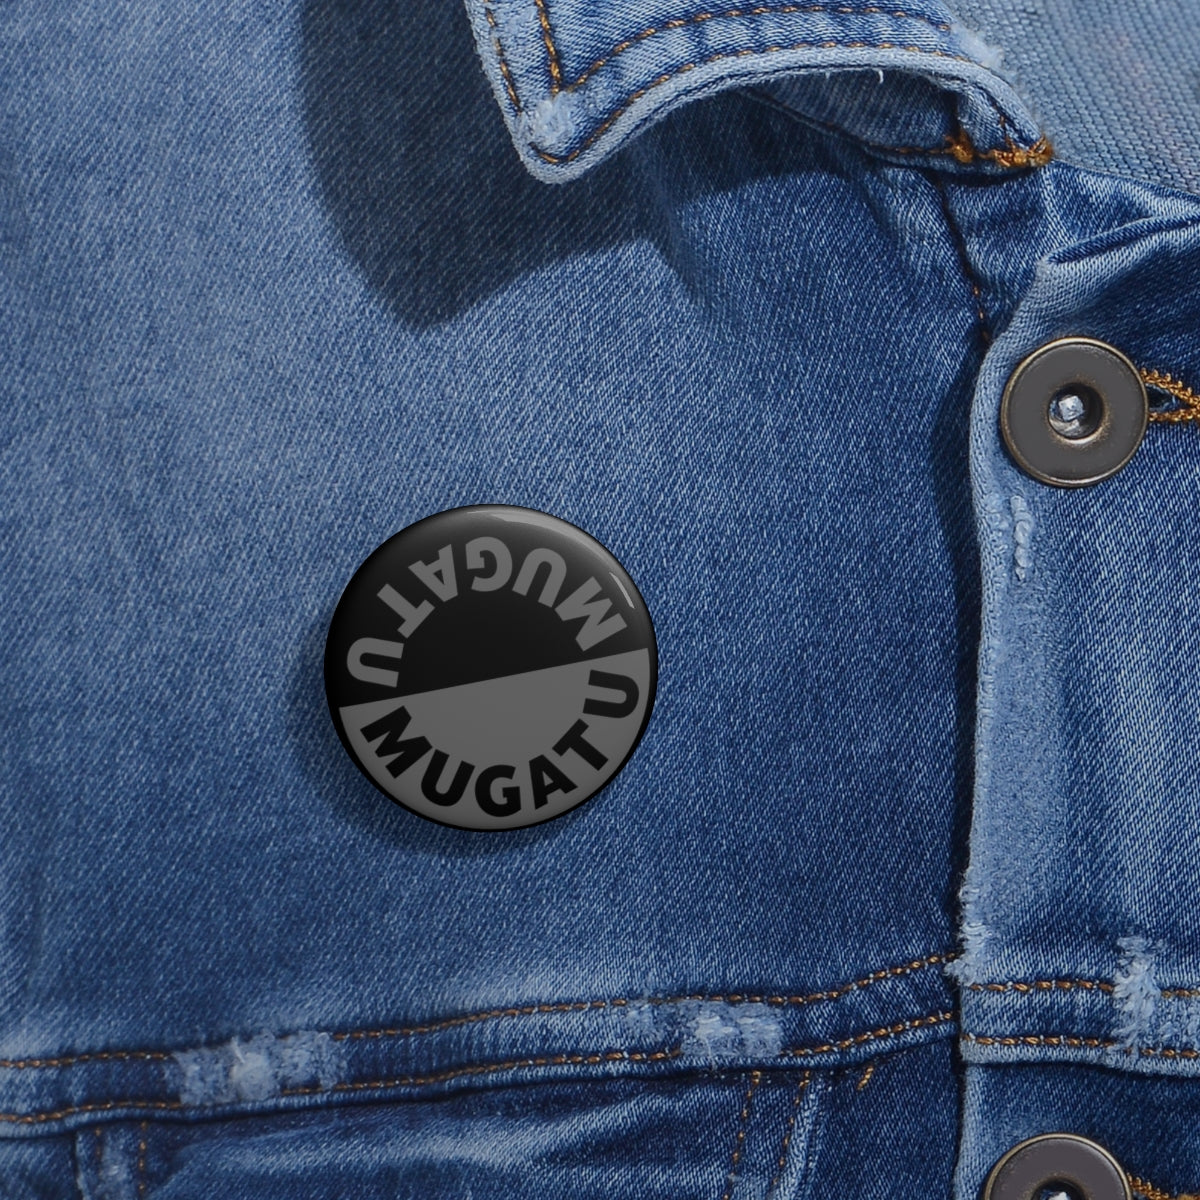 Mugatu Zoolander| Pin Button